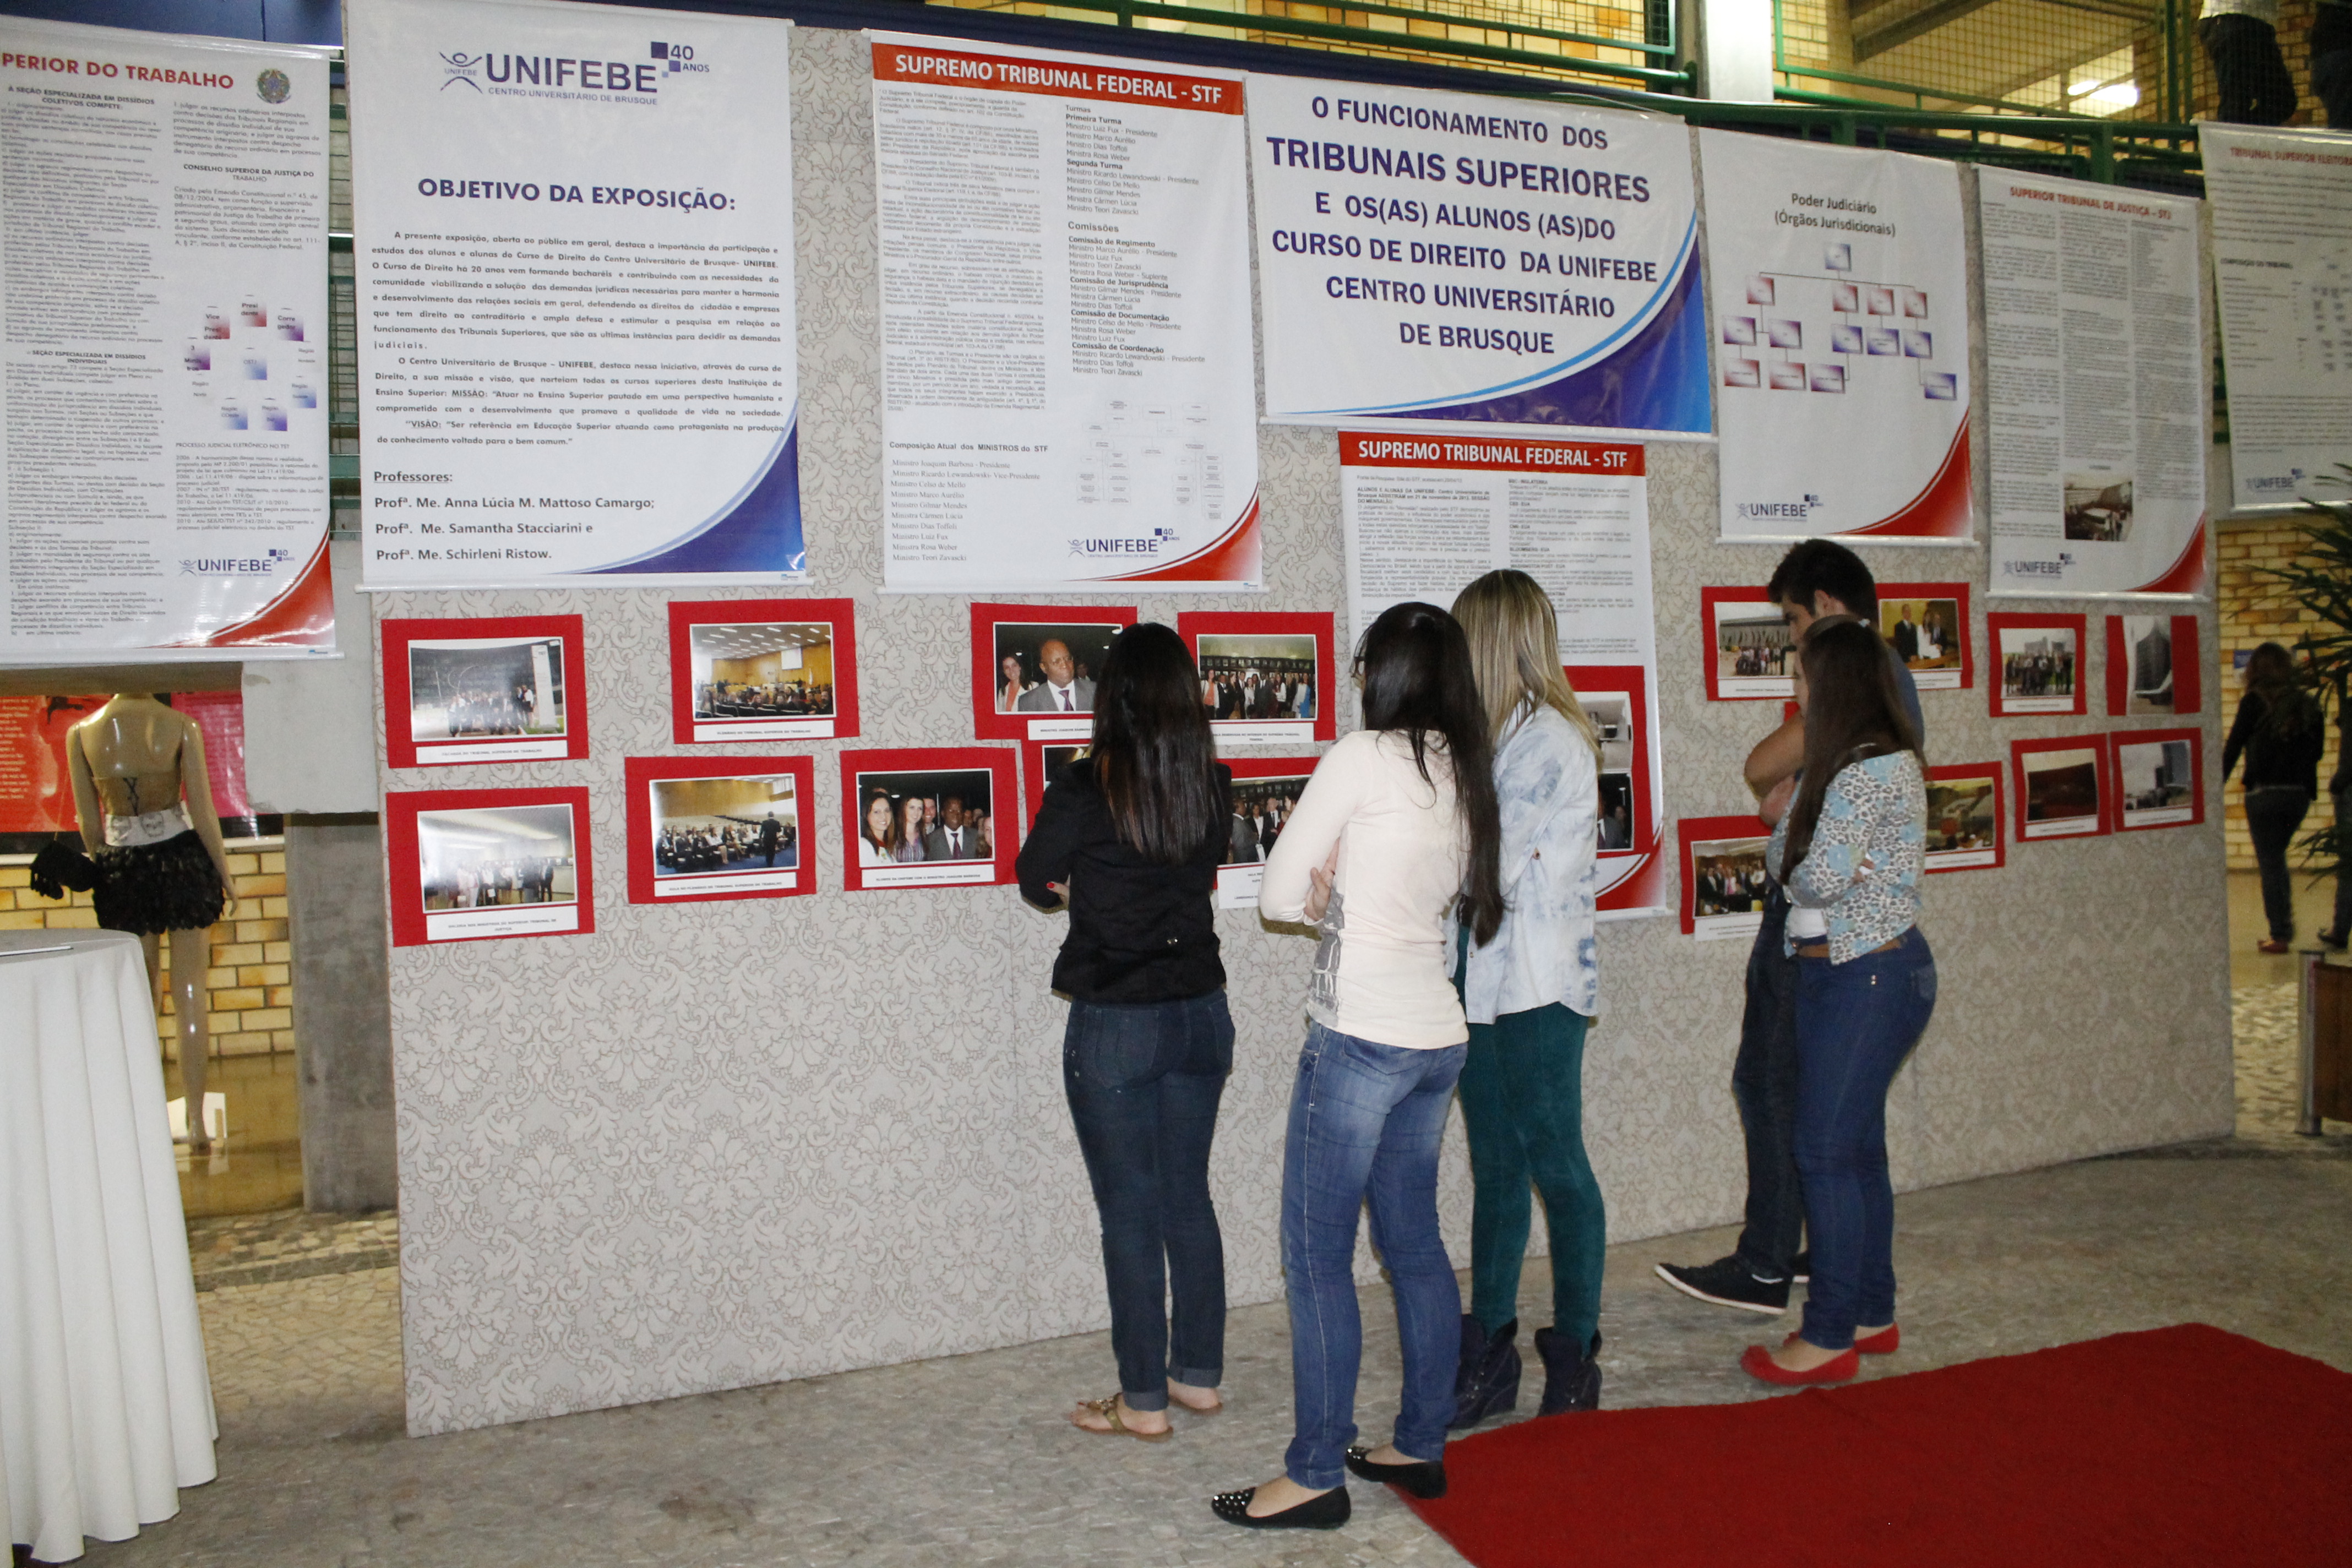 Tribunais Superiores e alunos de Direito da UNIFEBE são tema de exposição